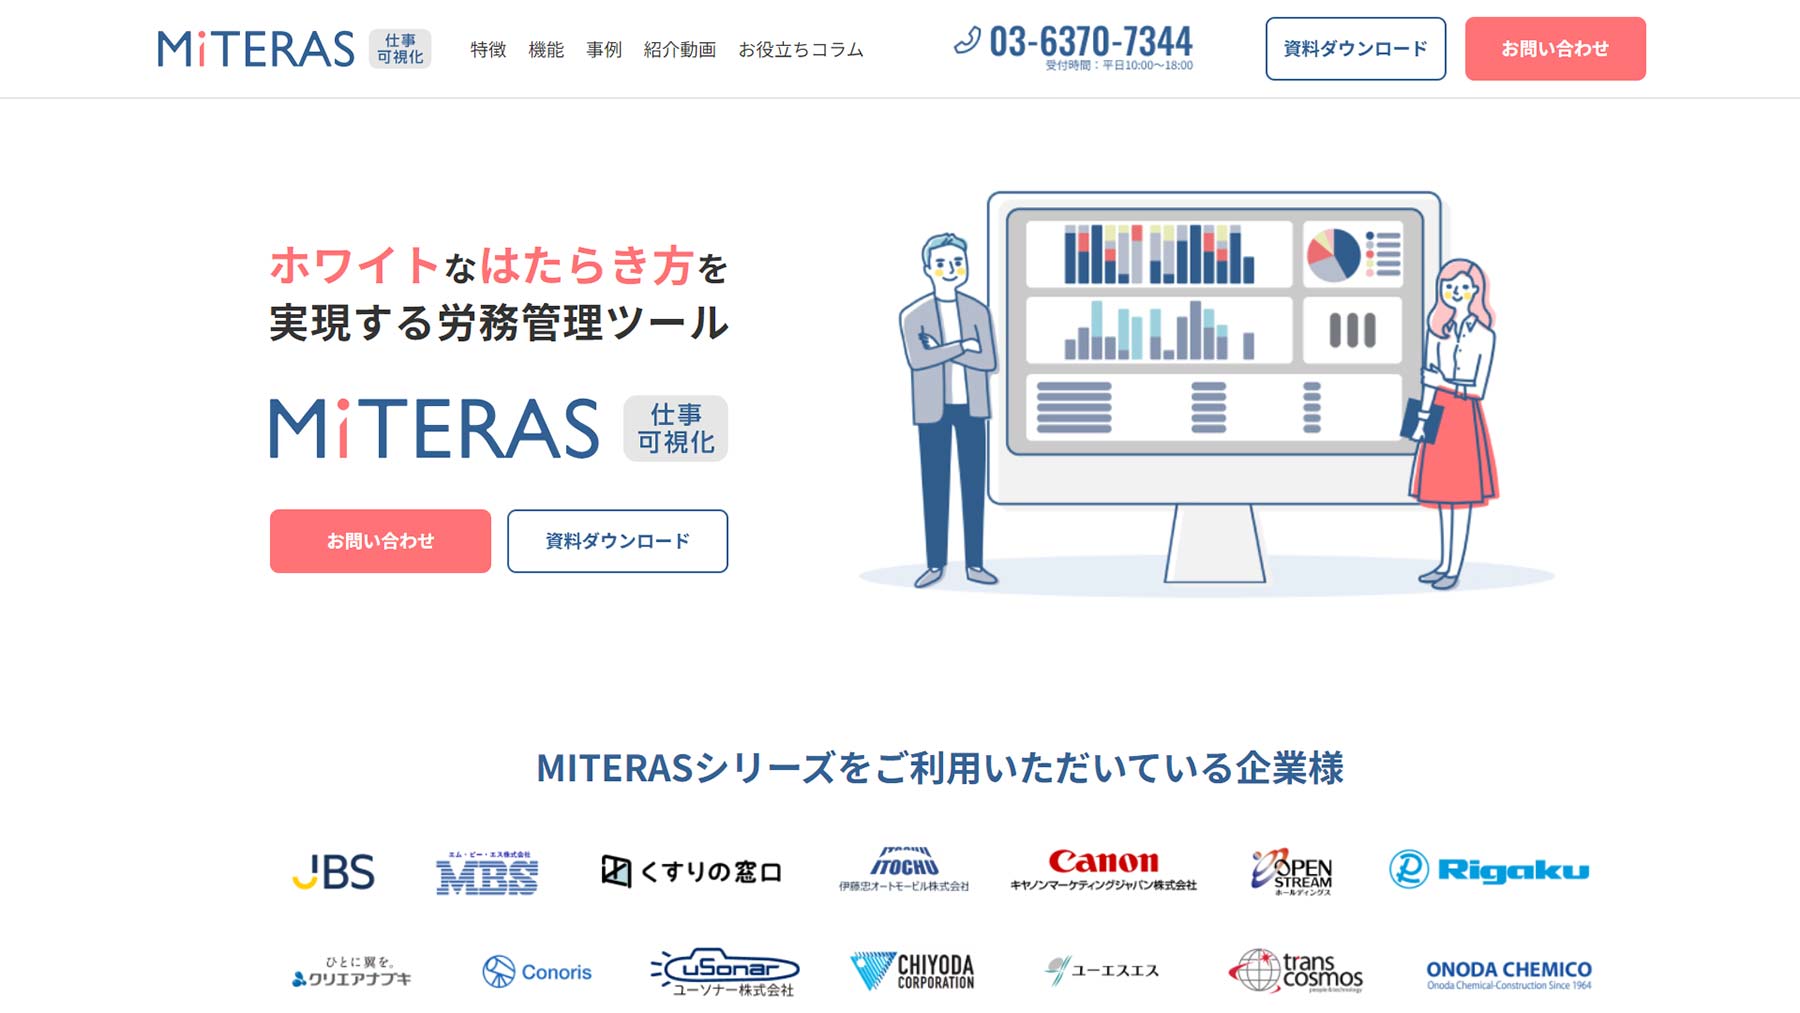 MITERAS仕事可視化公式Webサイト